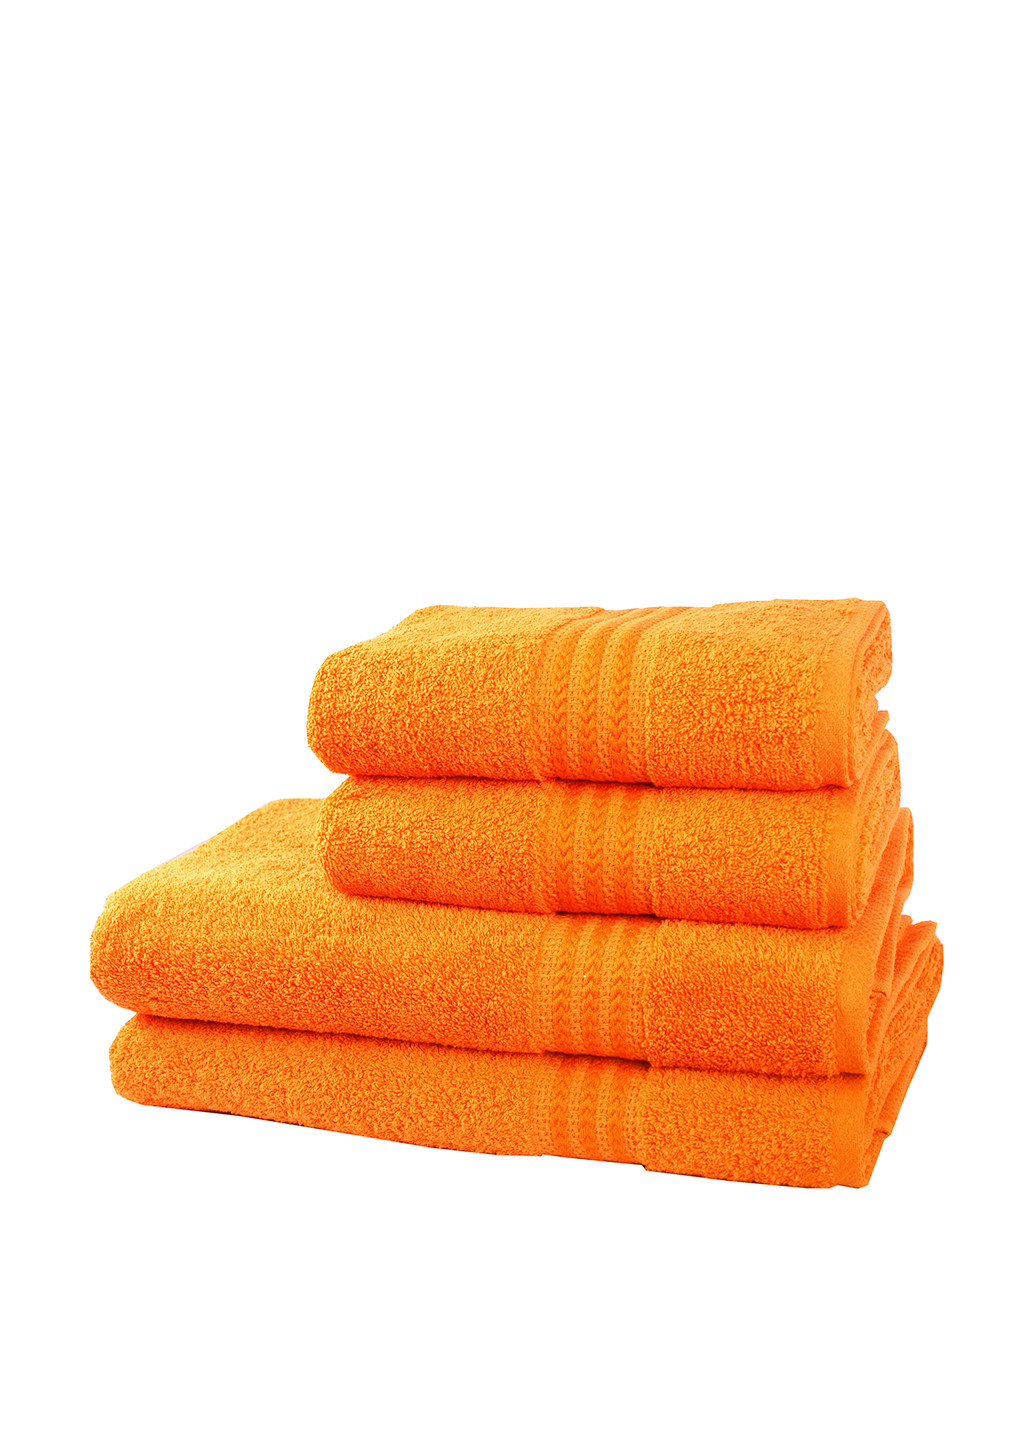 Hobby полотенце, 70х140 см полоска оранжево-красный производство - Турция